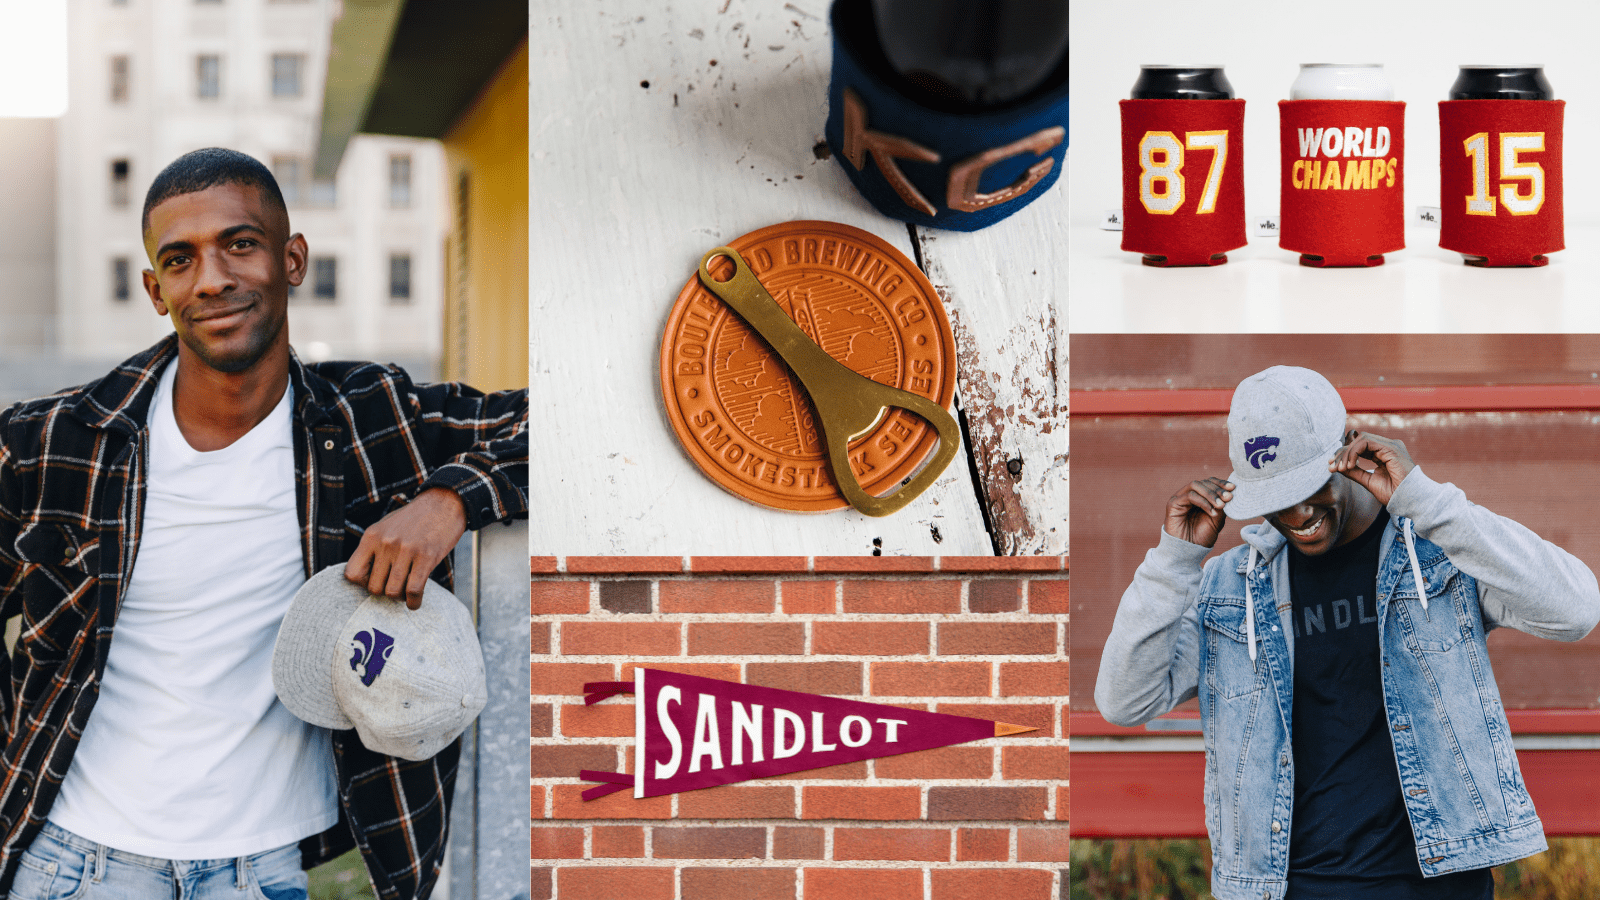 Sandlot Goods